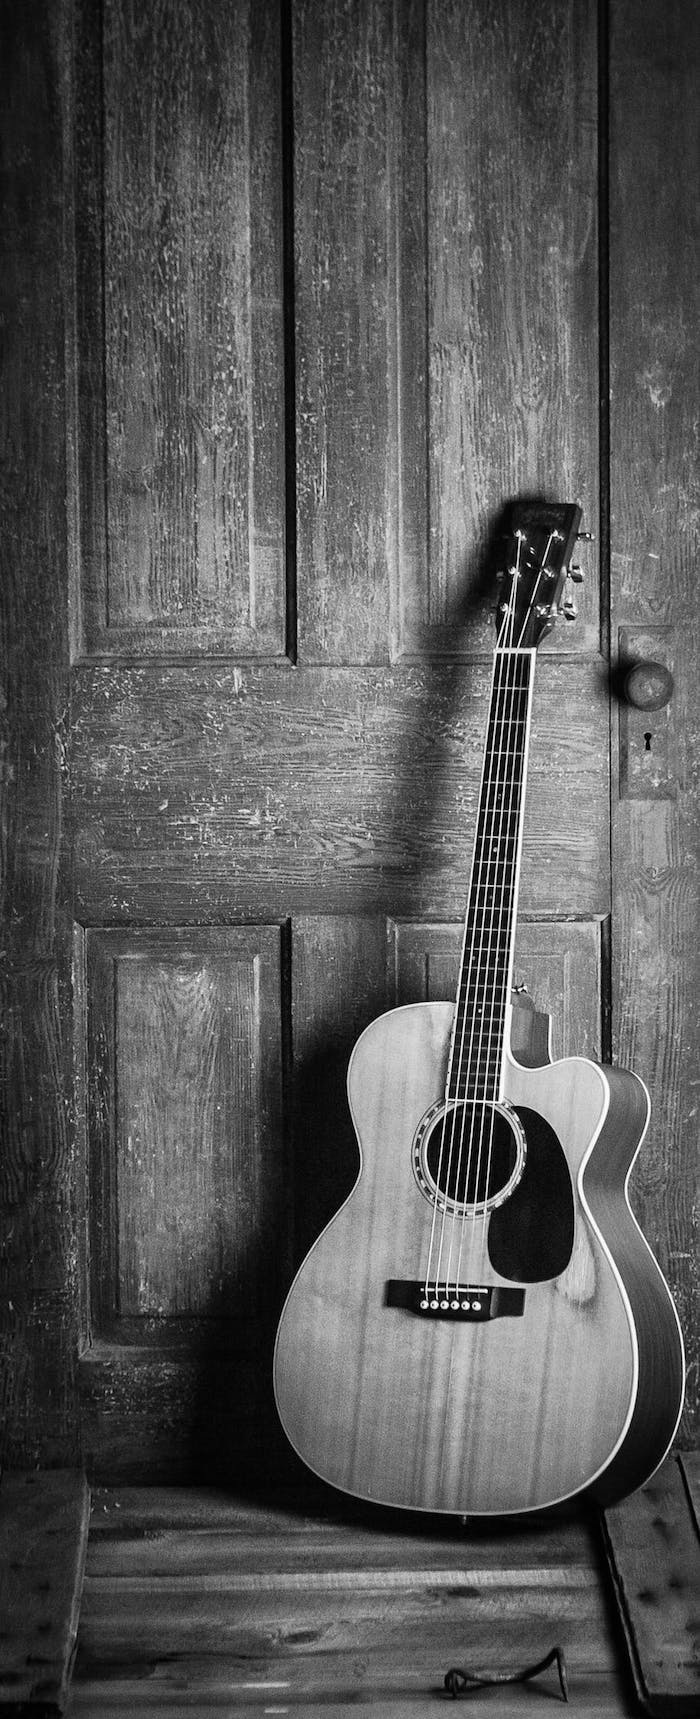 Guitare sur une porte d'entrée en bois, fond sombre, photo monochrome élégante à utiliser sur son portable